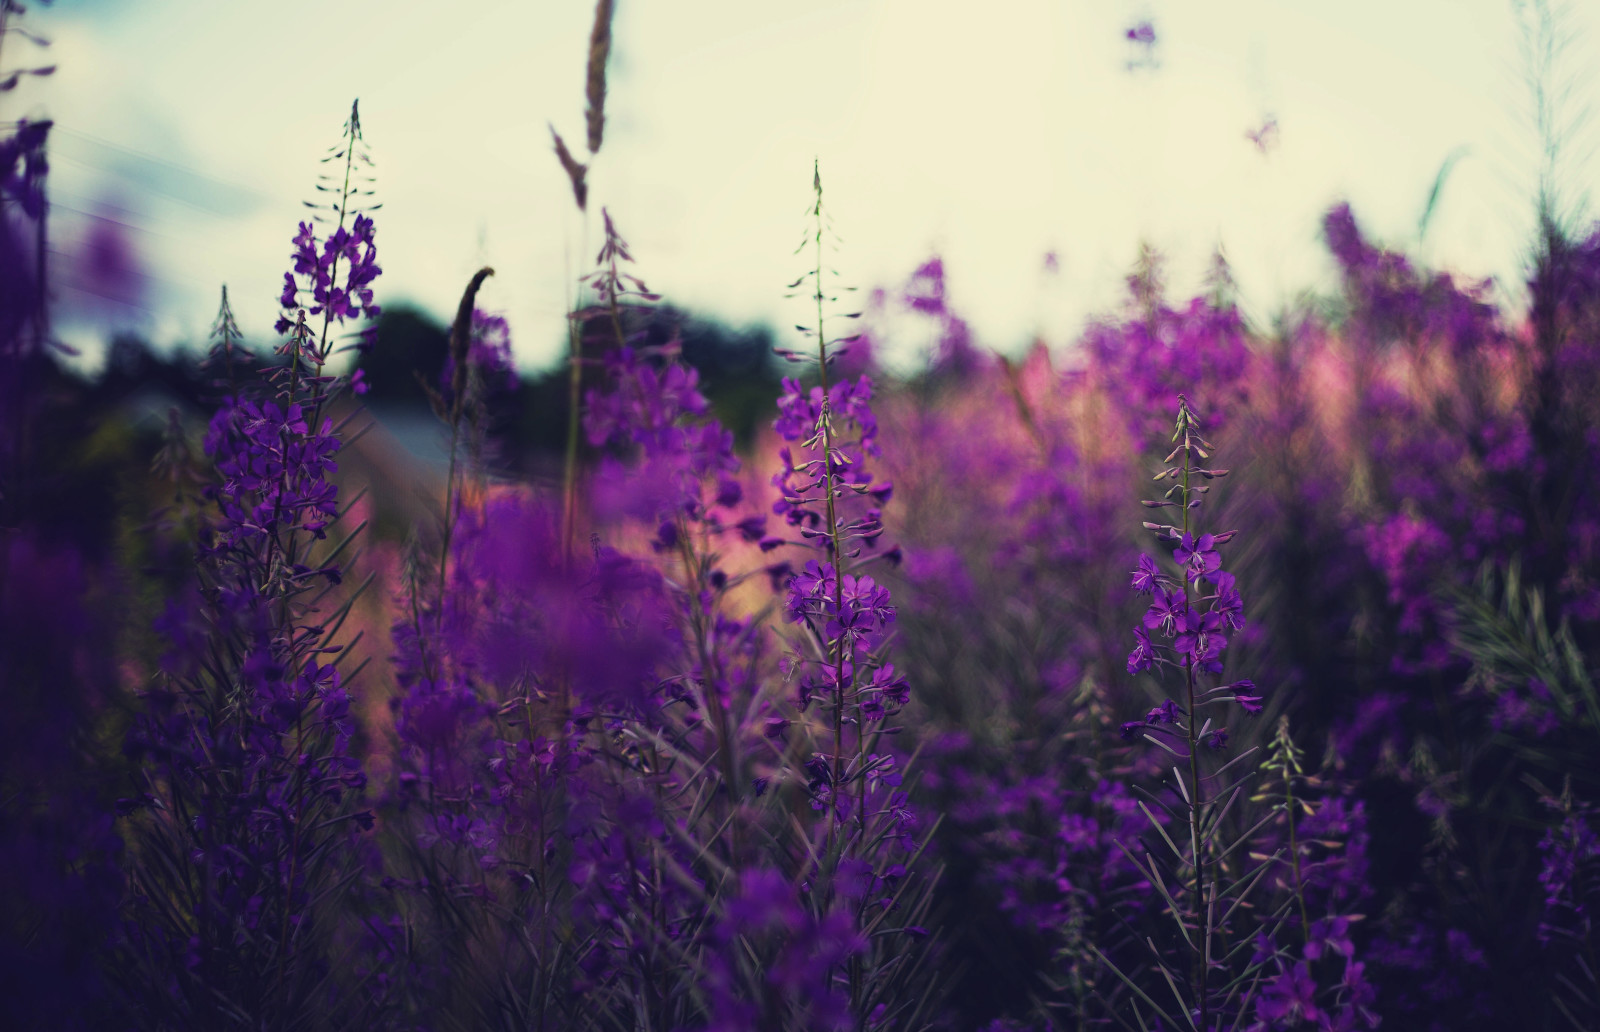 bidang, bunga-bunga, lavender, batang